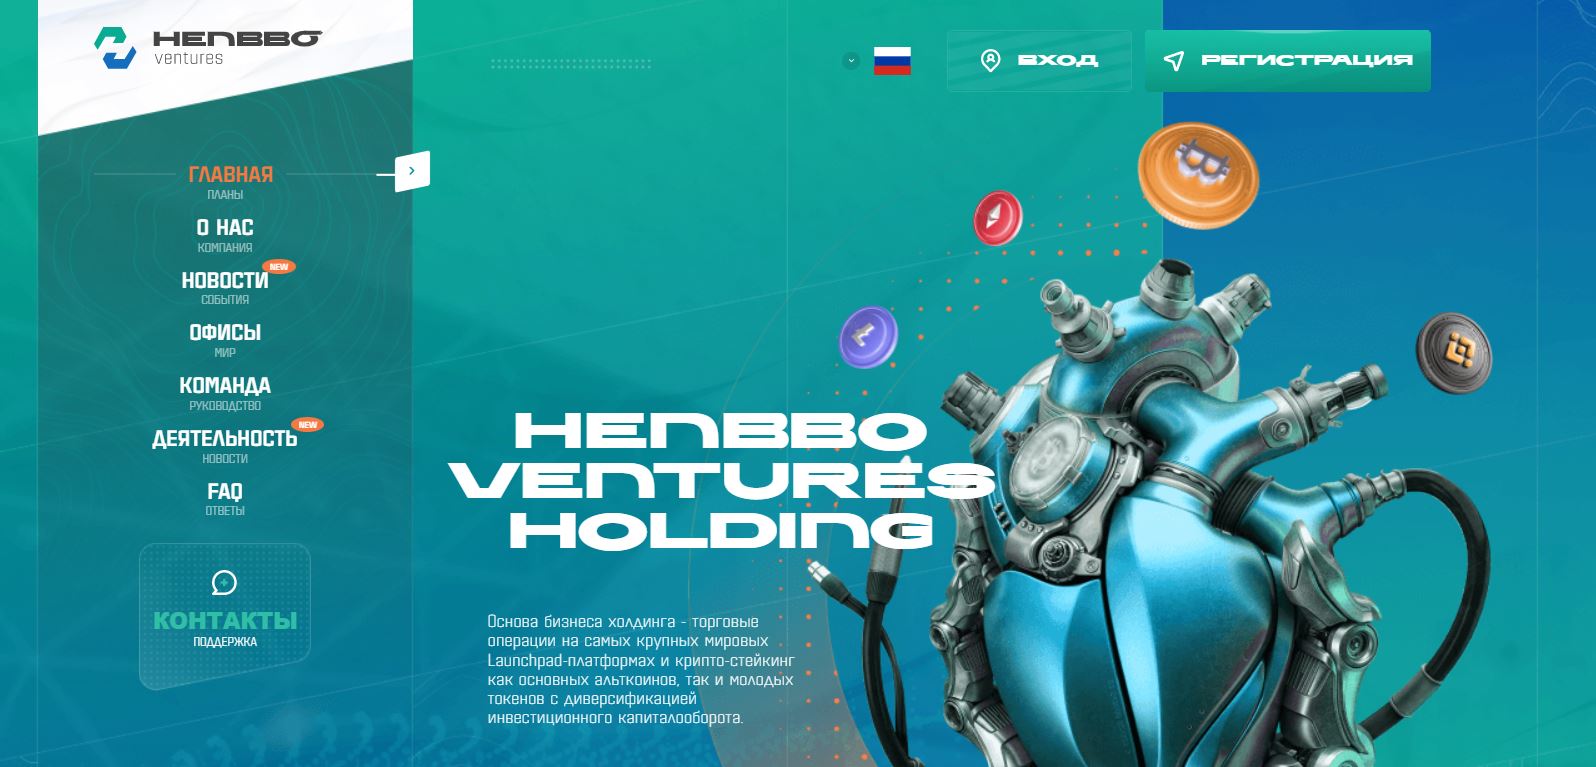 Henbbo Ventures 